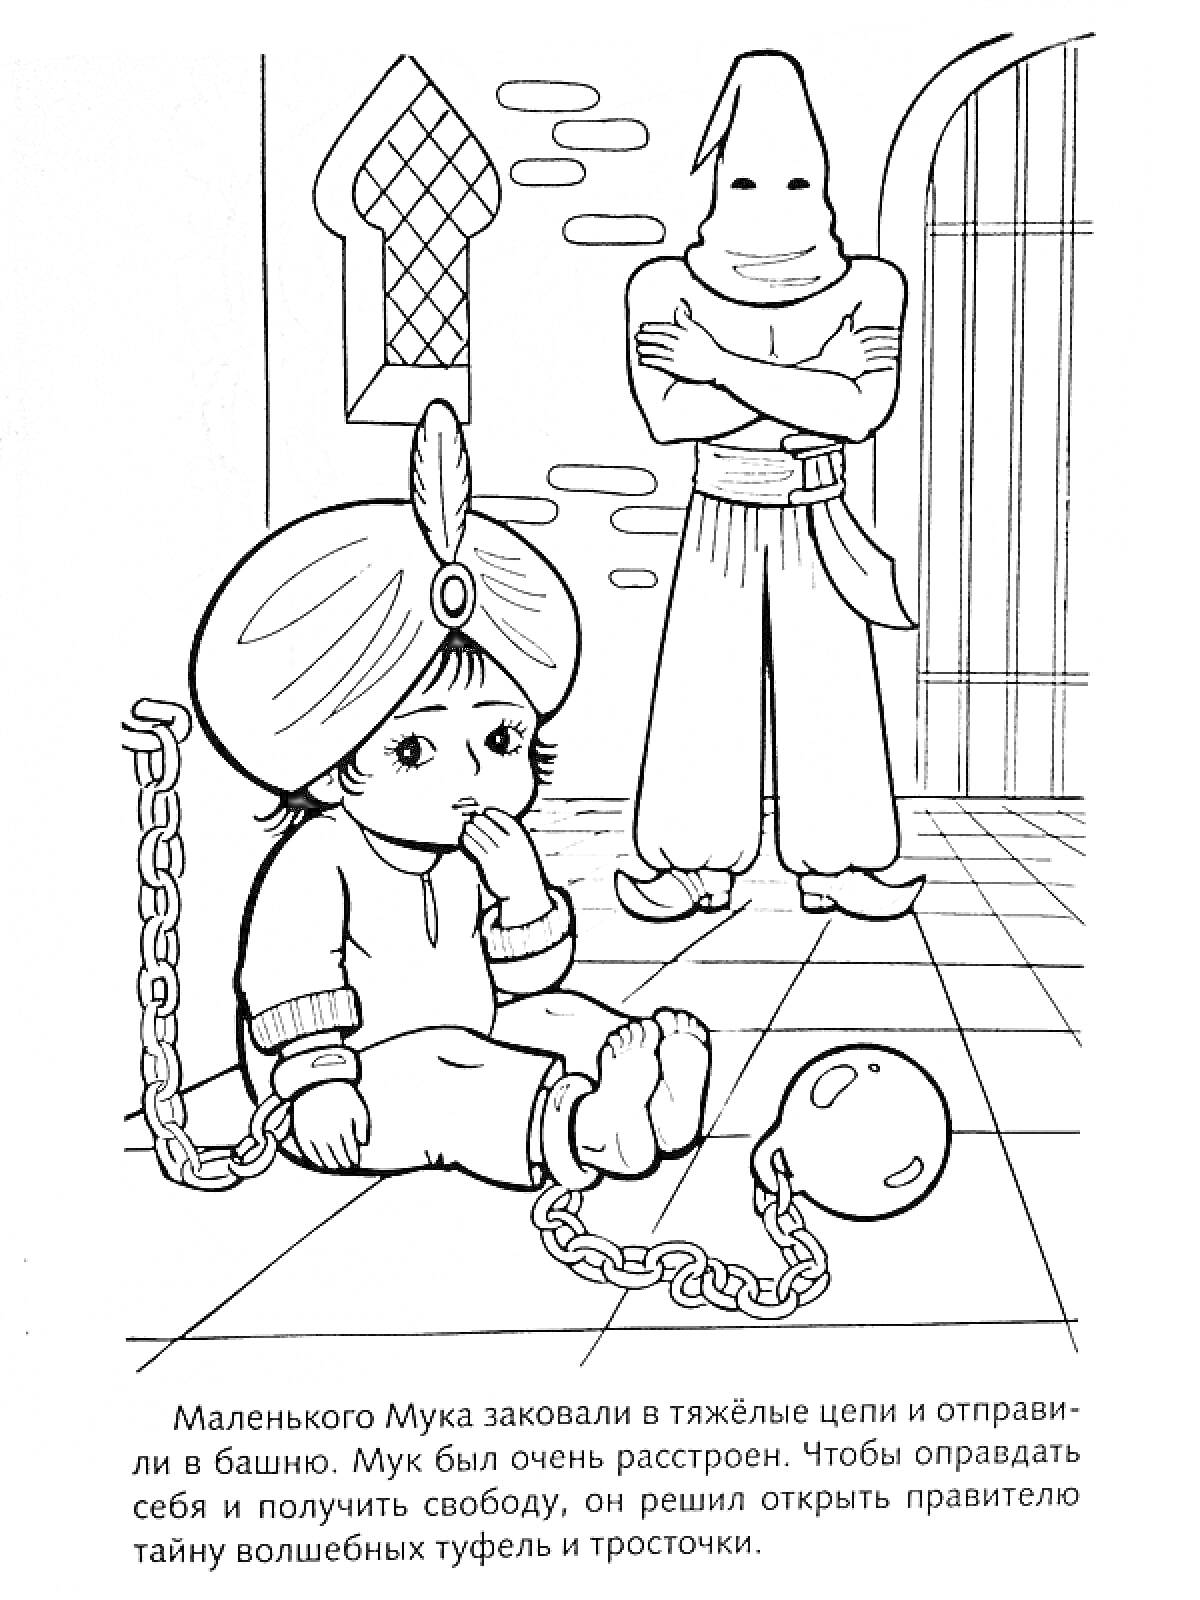 Маленький Мук, закованный в цепи, в башне с надзирателем в капюшоне